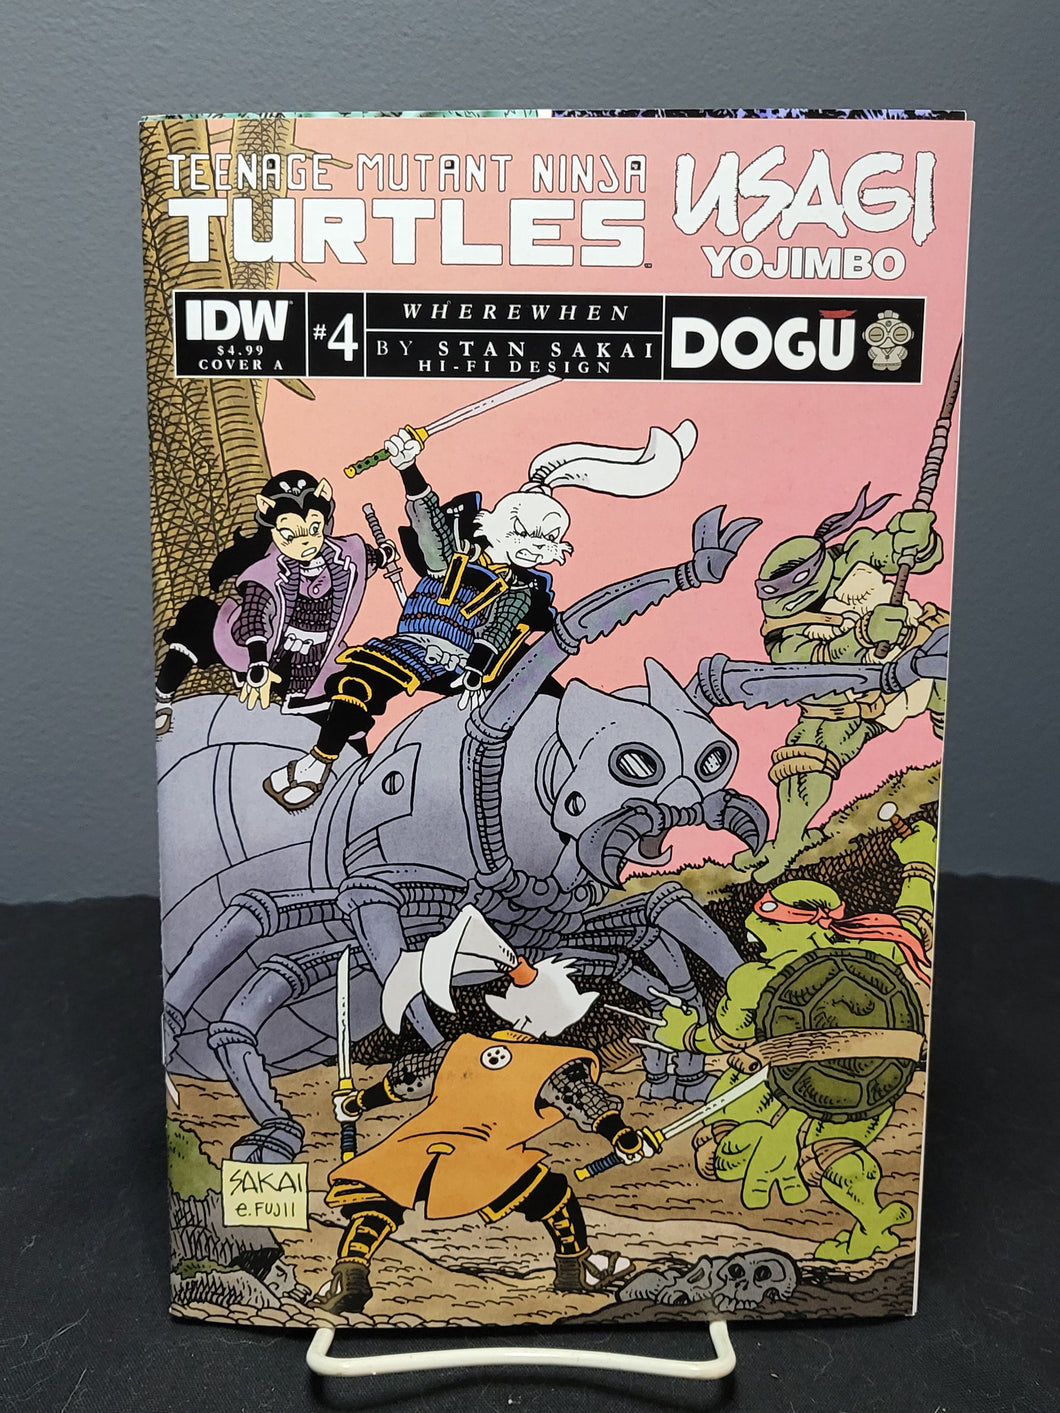 Teenage Mutant Ninja Turtles Usagi Yojimbo #4